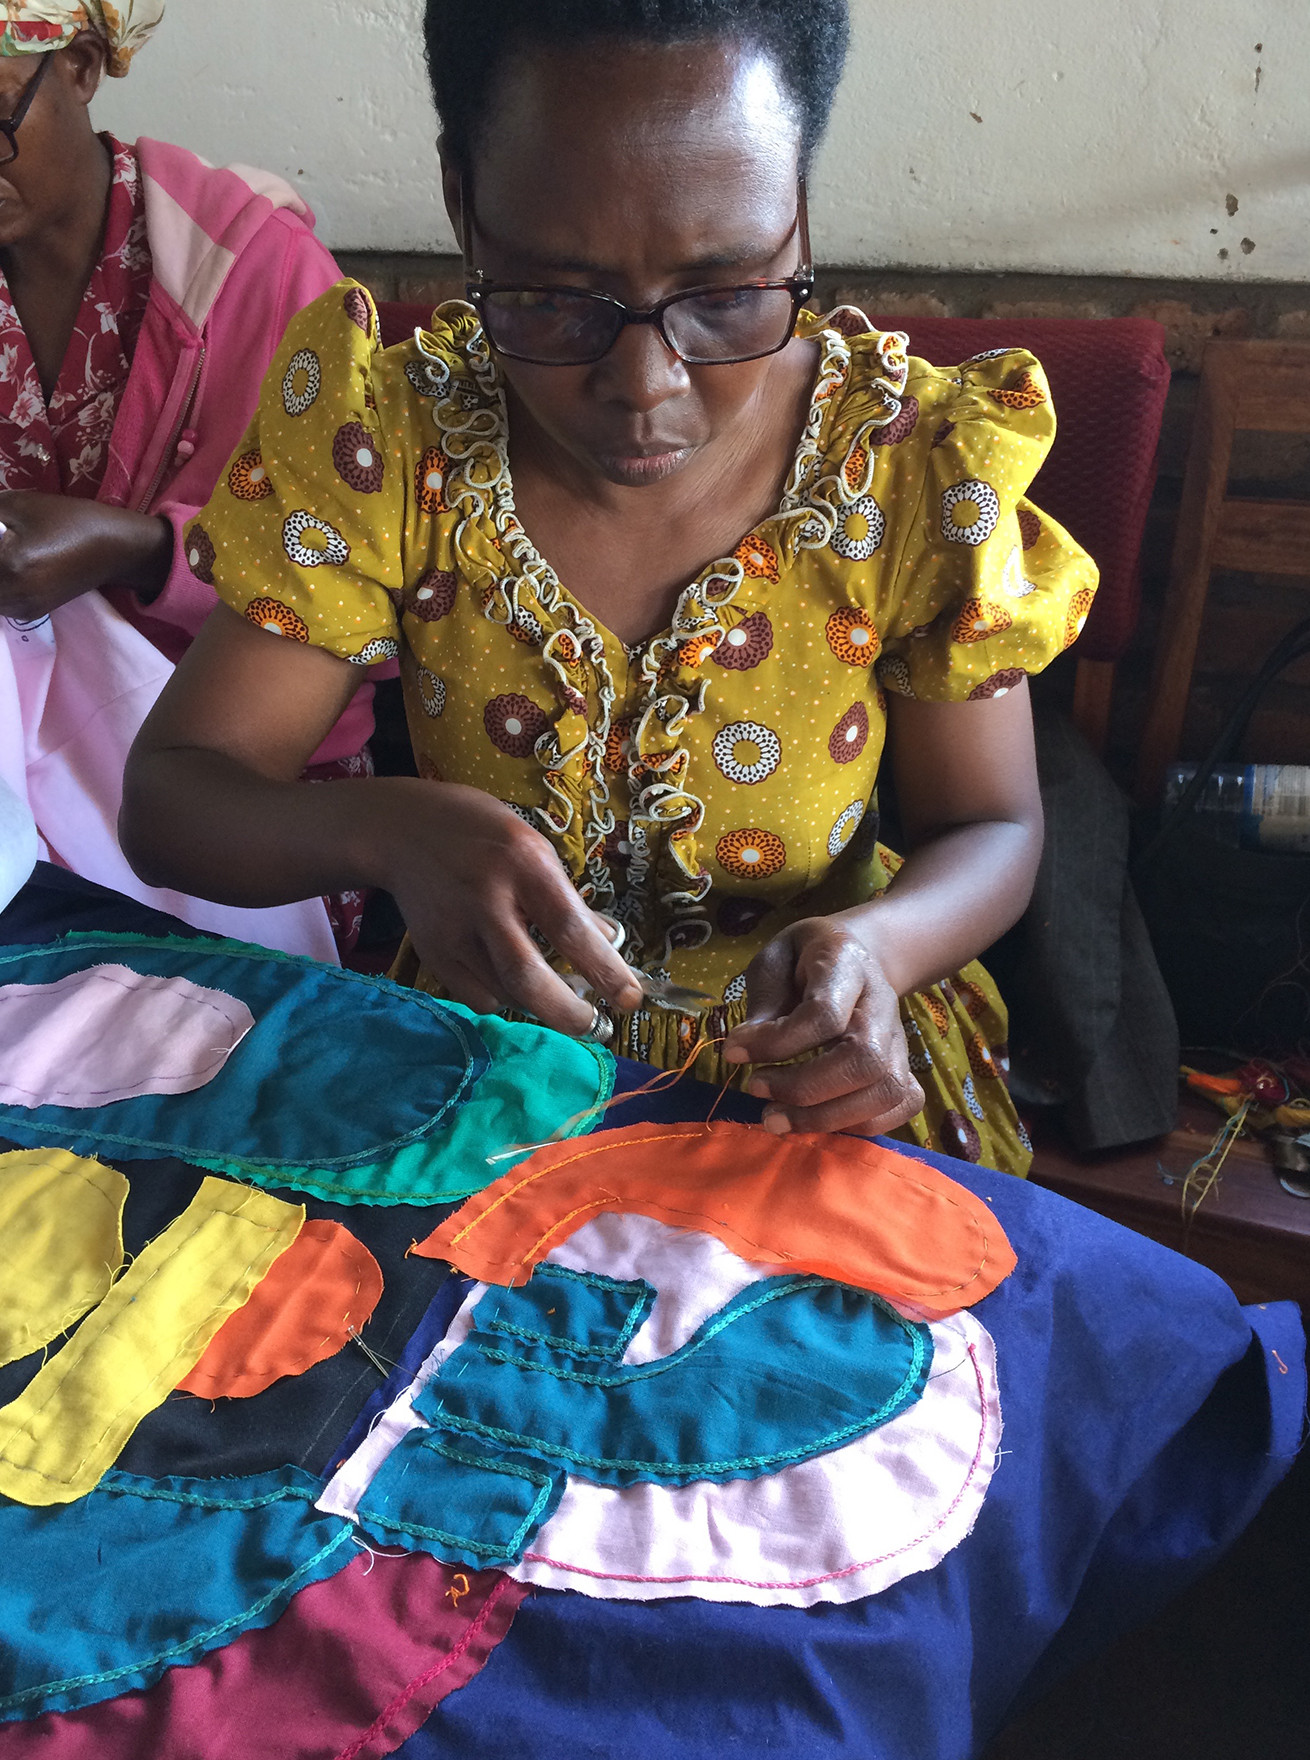 PEINTURE A L’AIGUILLE AU RWANDA : La broderie au fil de coton